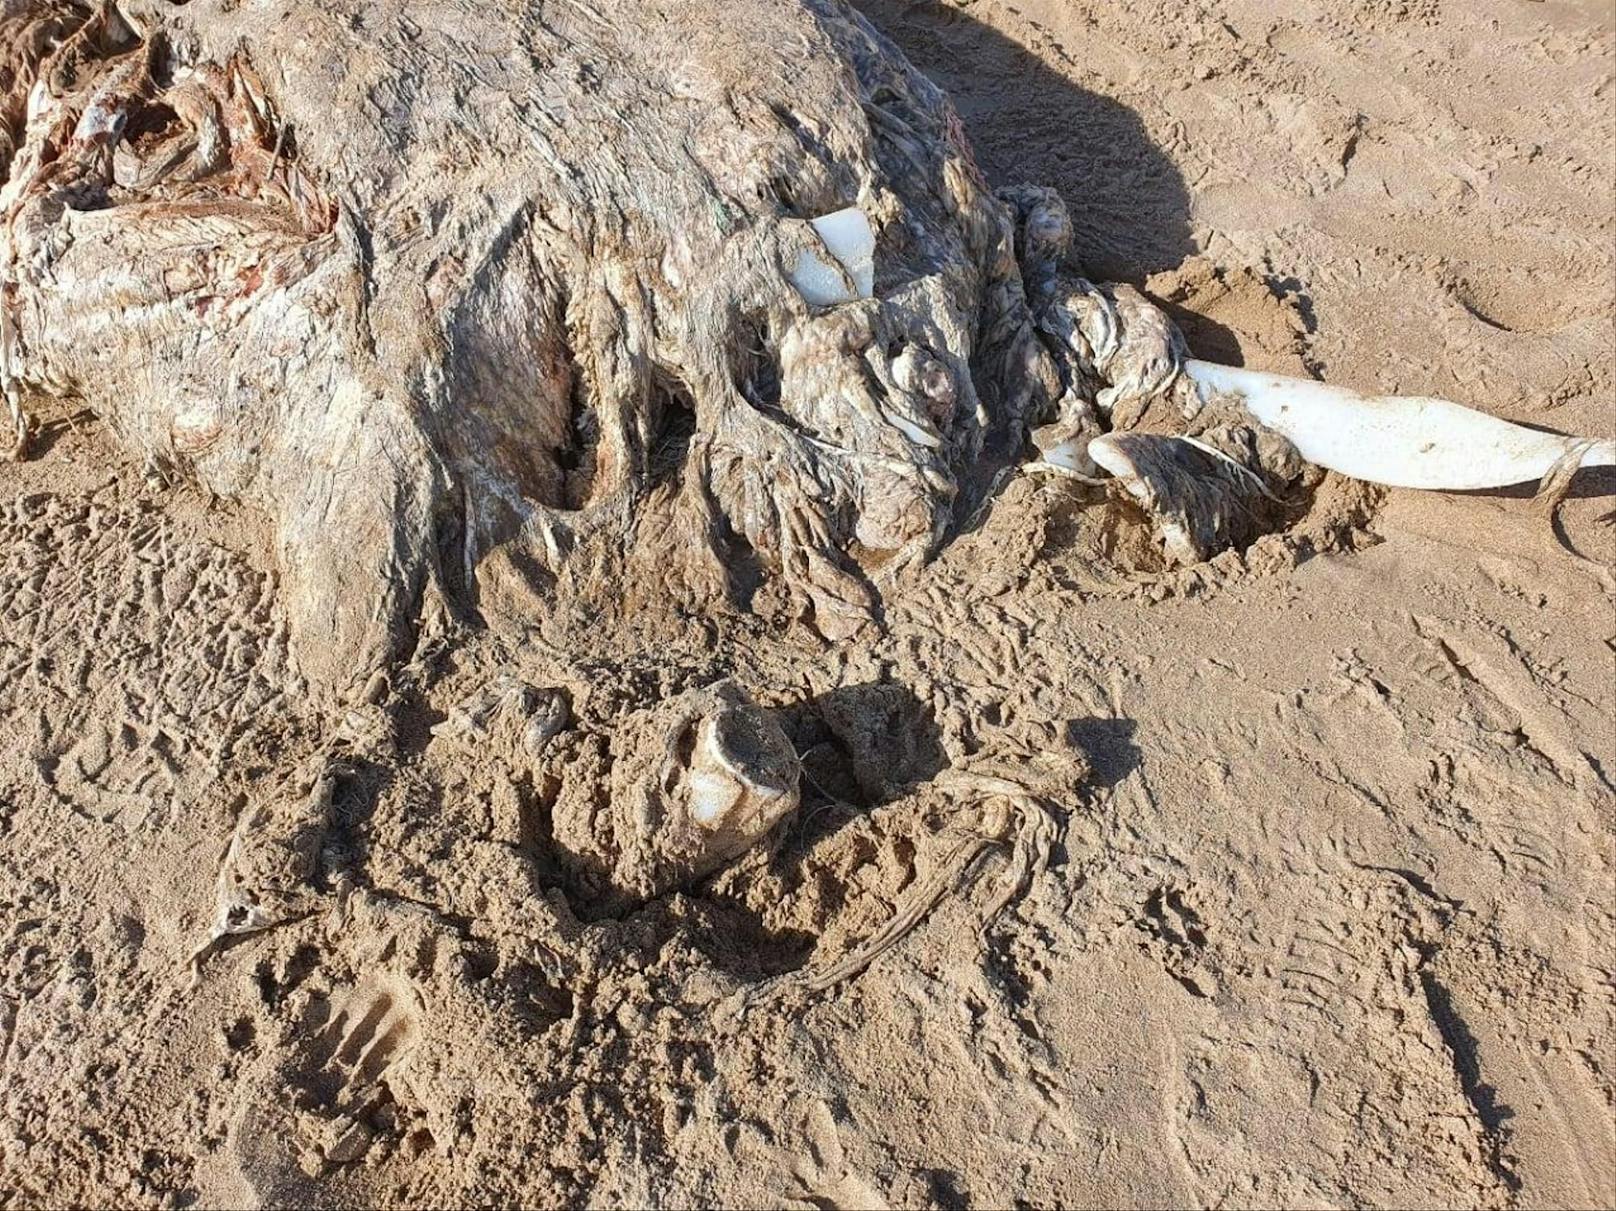 Dieser 23 Meter lange Kadaver wurde am Strand von Wales entdeckt.